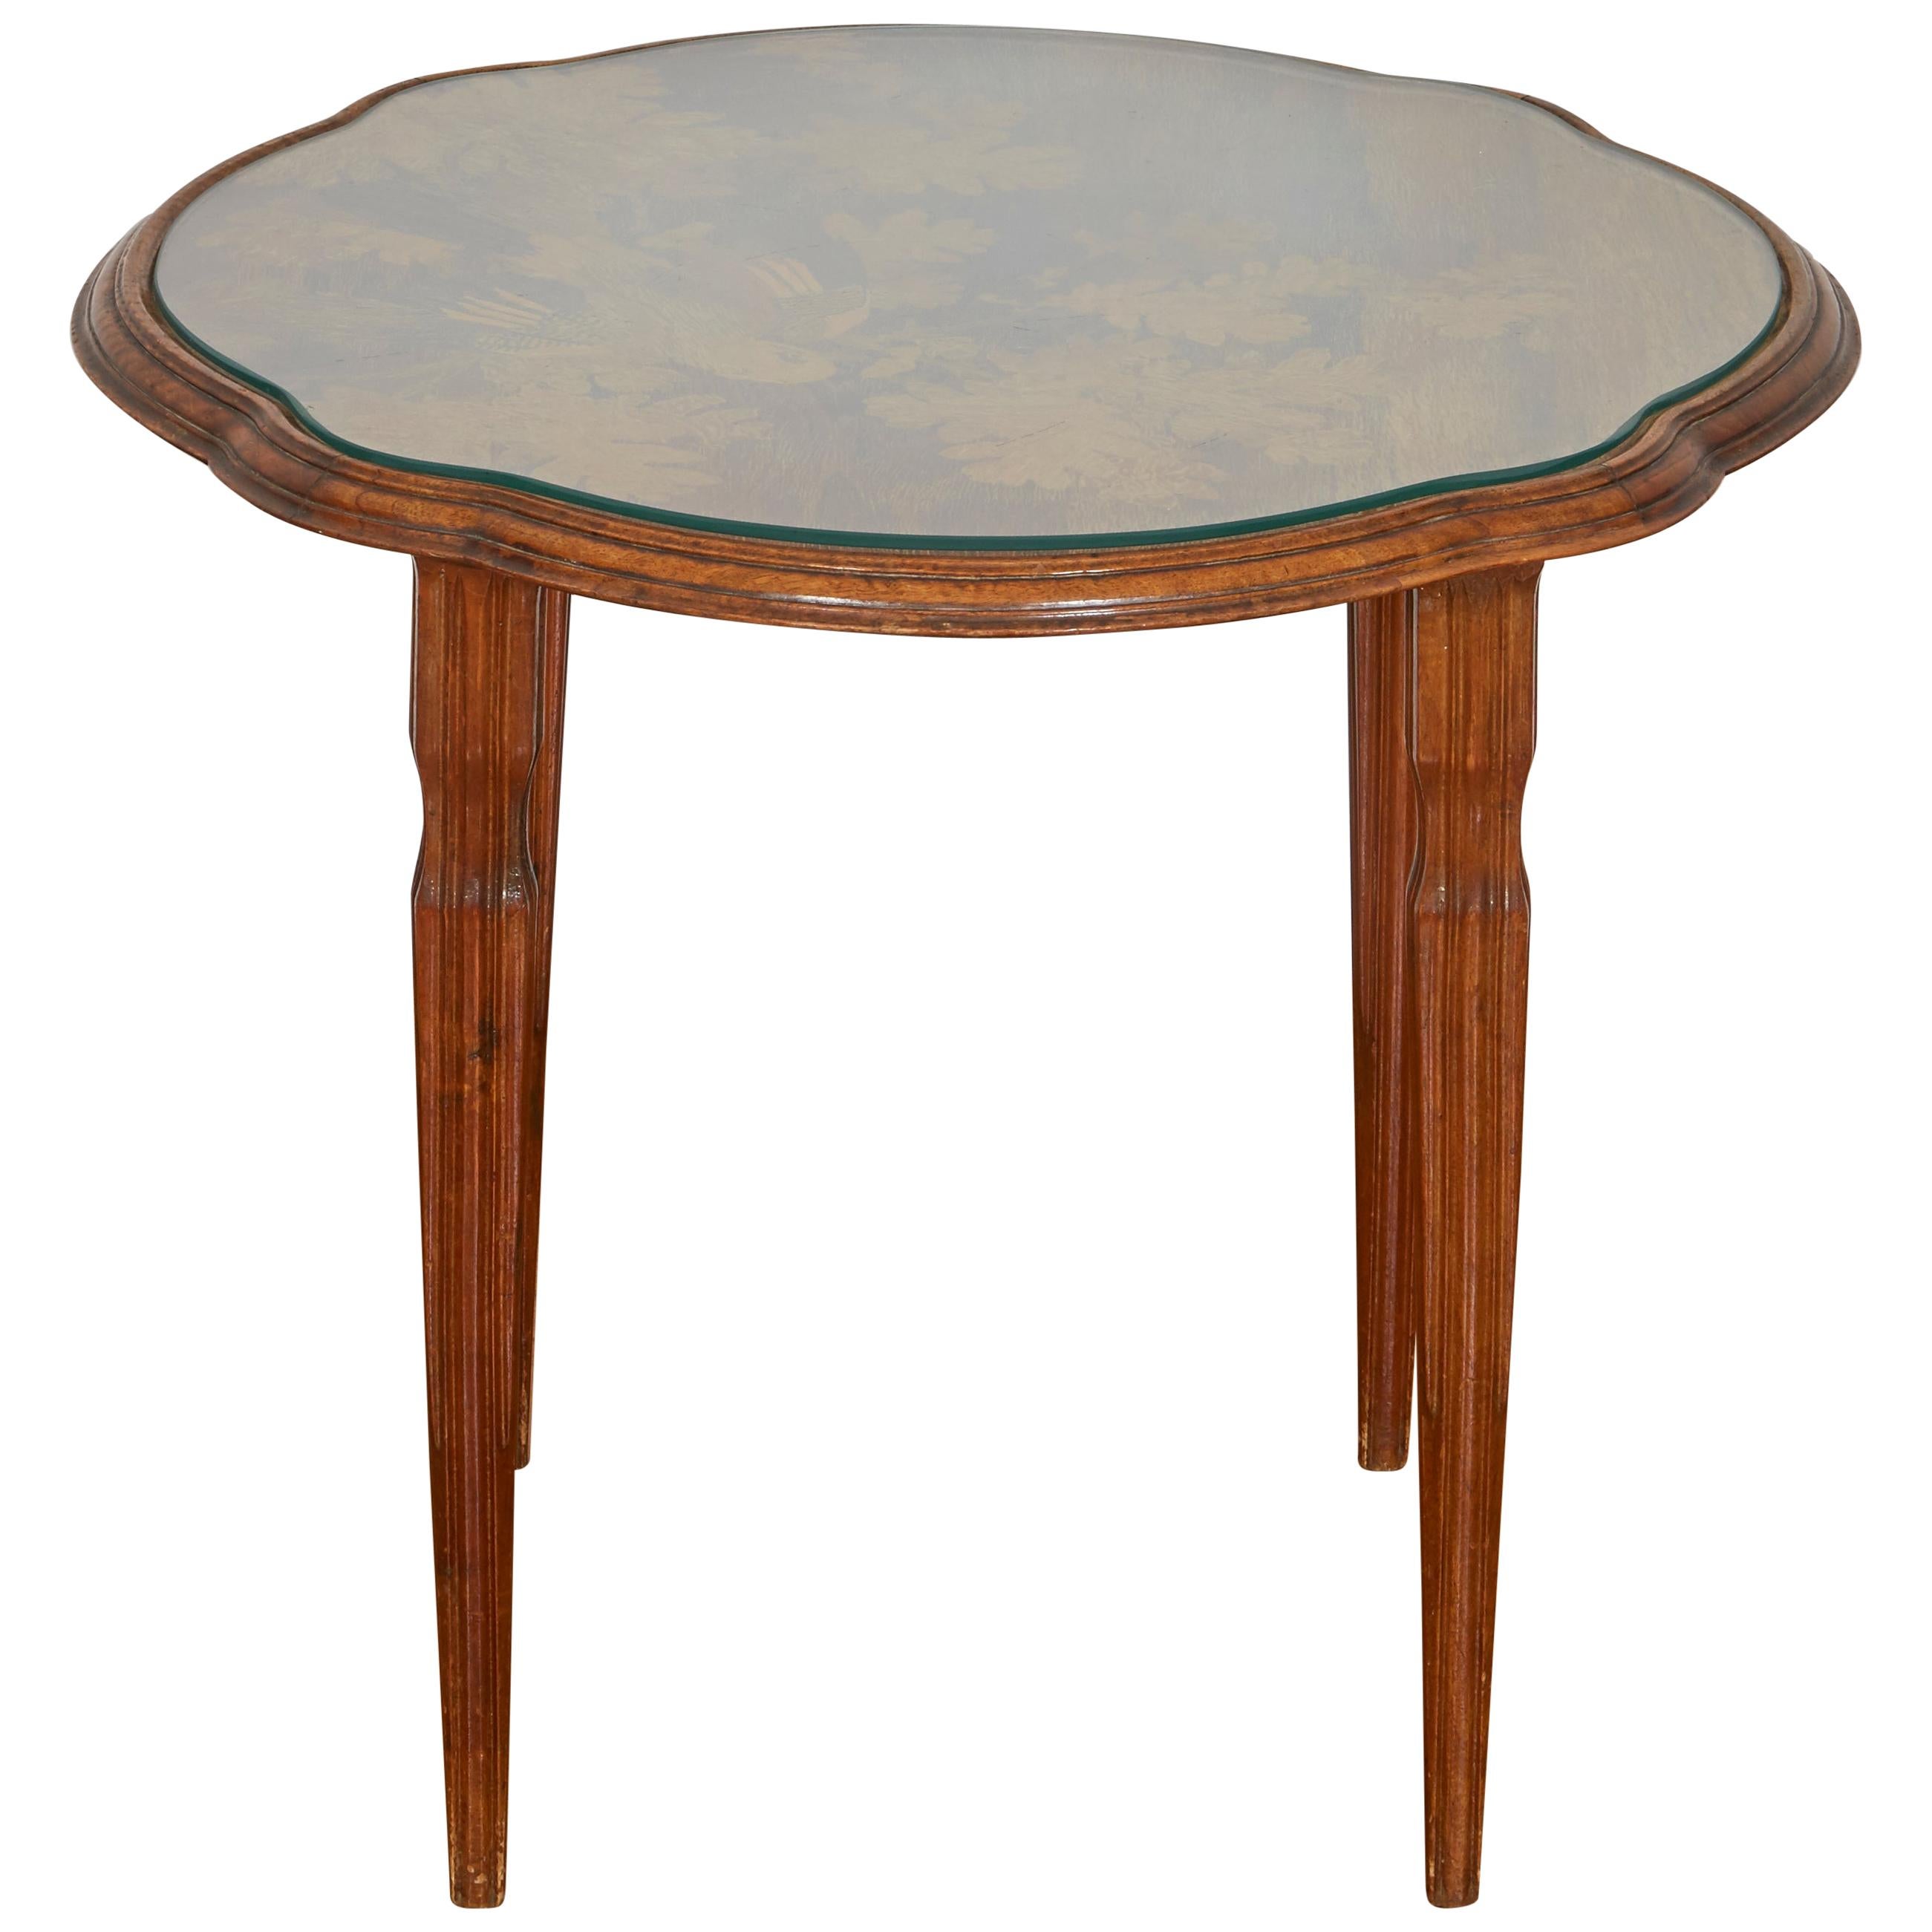 Emile Galle Art Nouveau Round Low Table